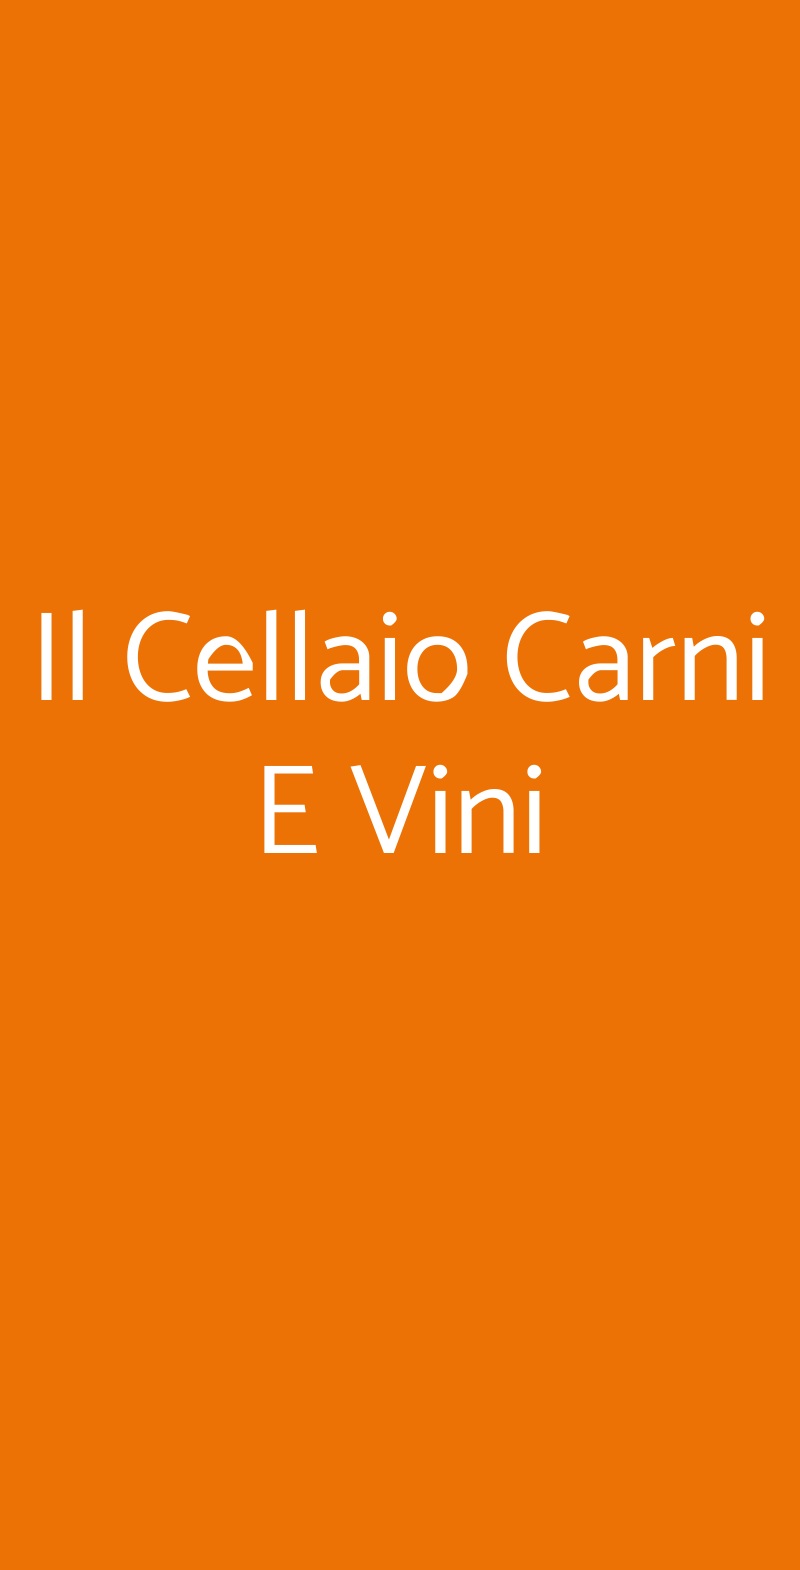 Il Cellaio Carni E Vini Napoli menù 1 pagina